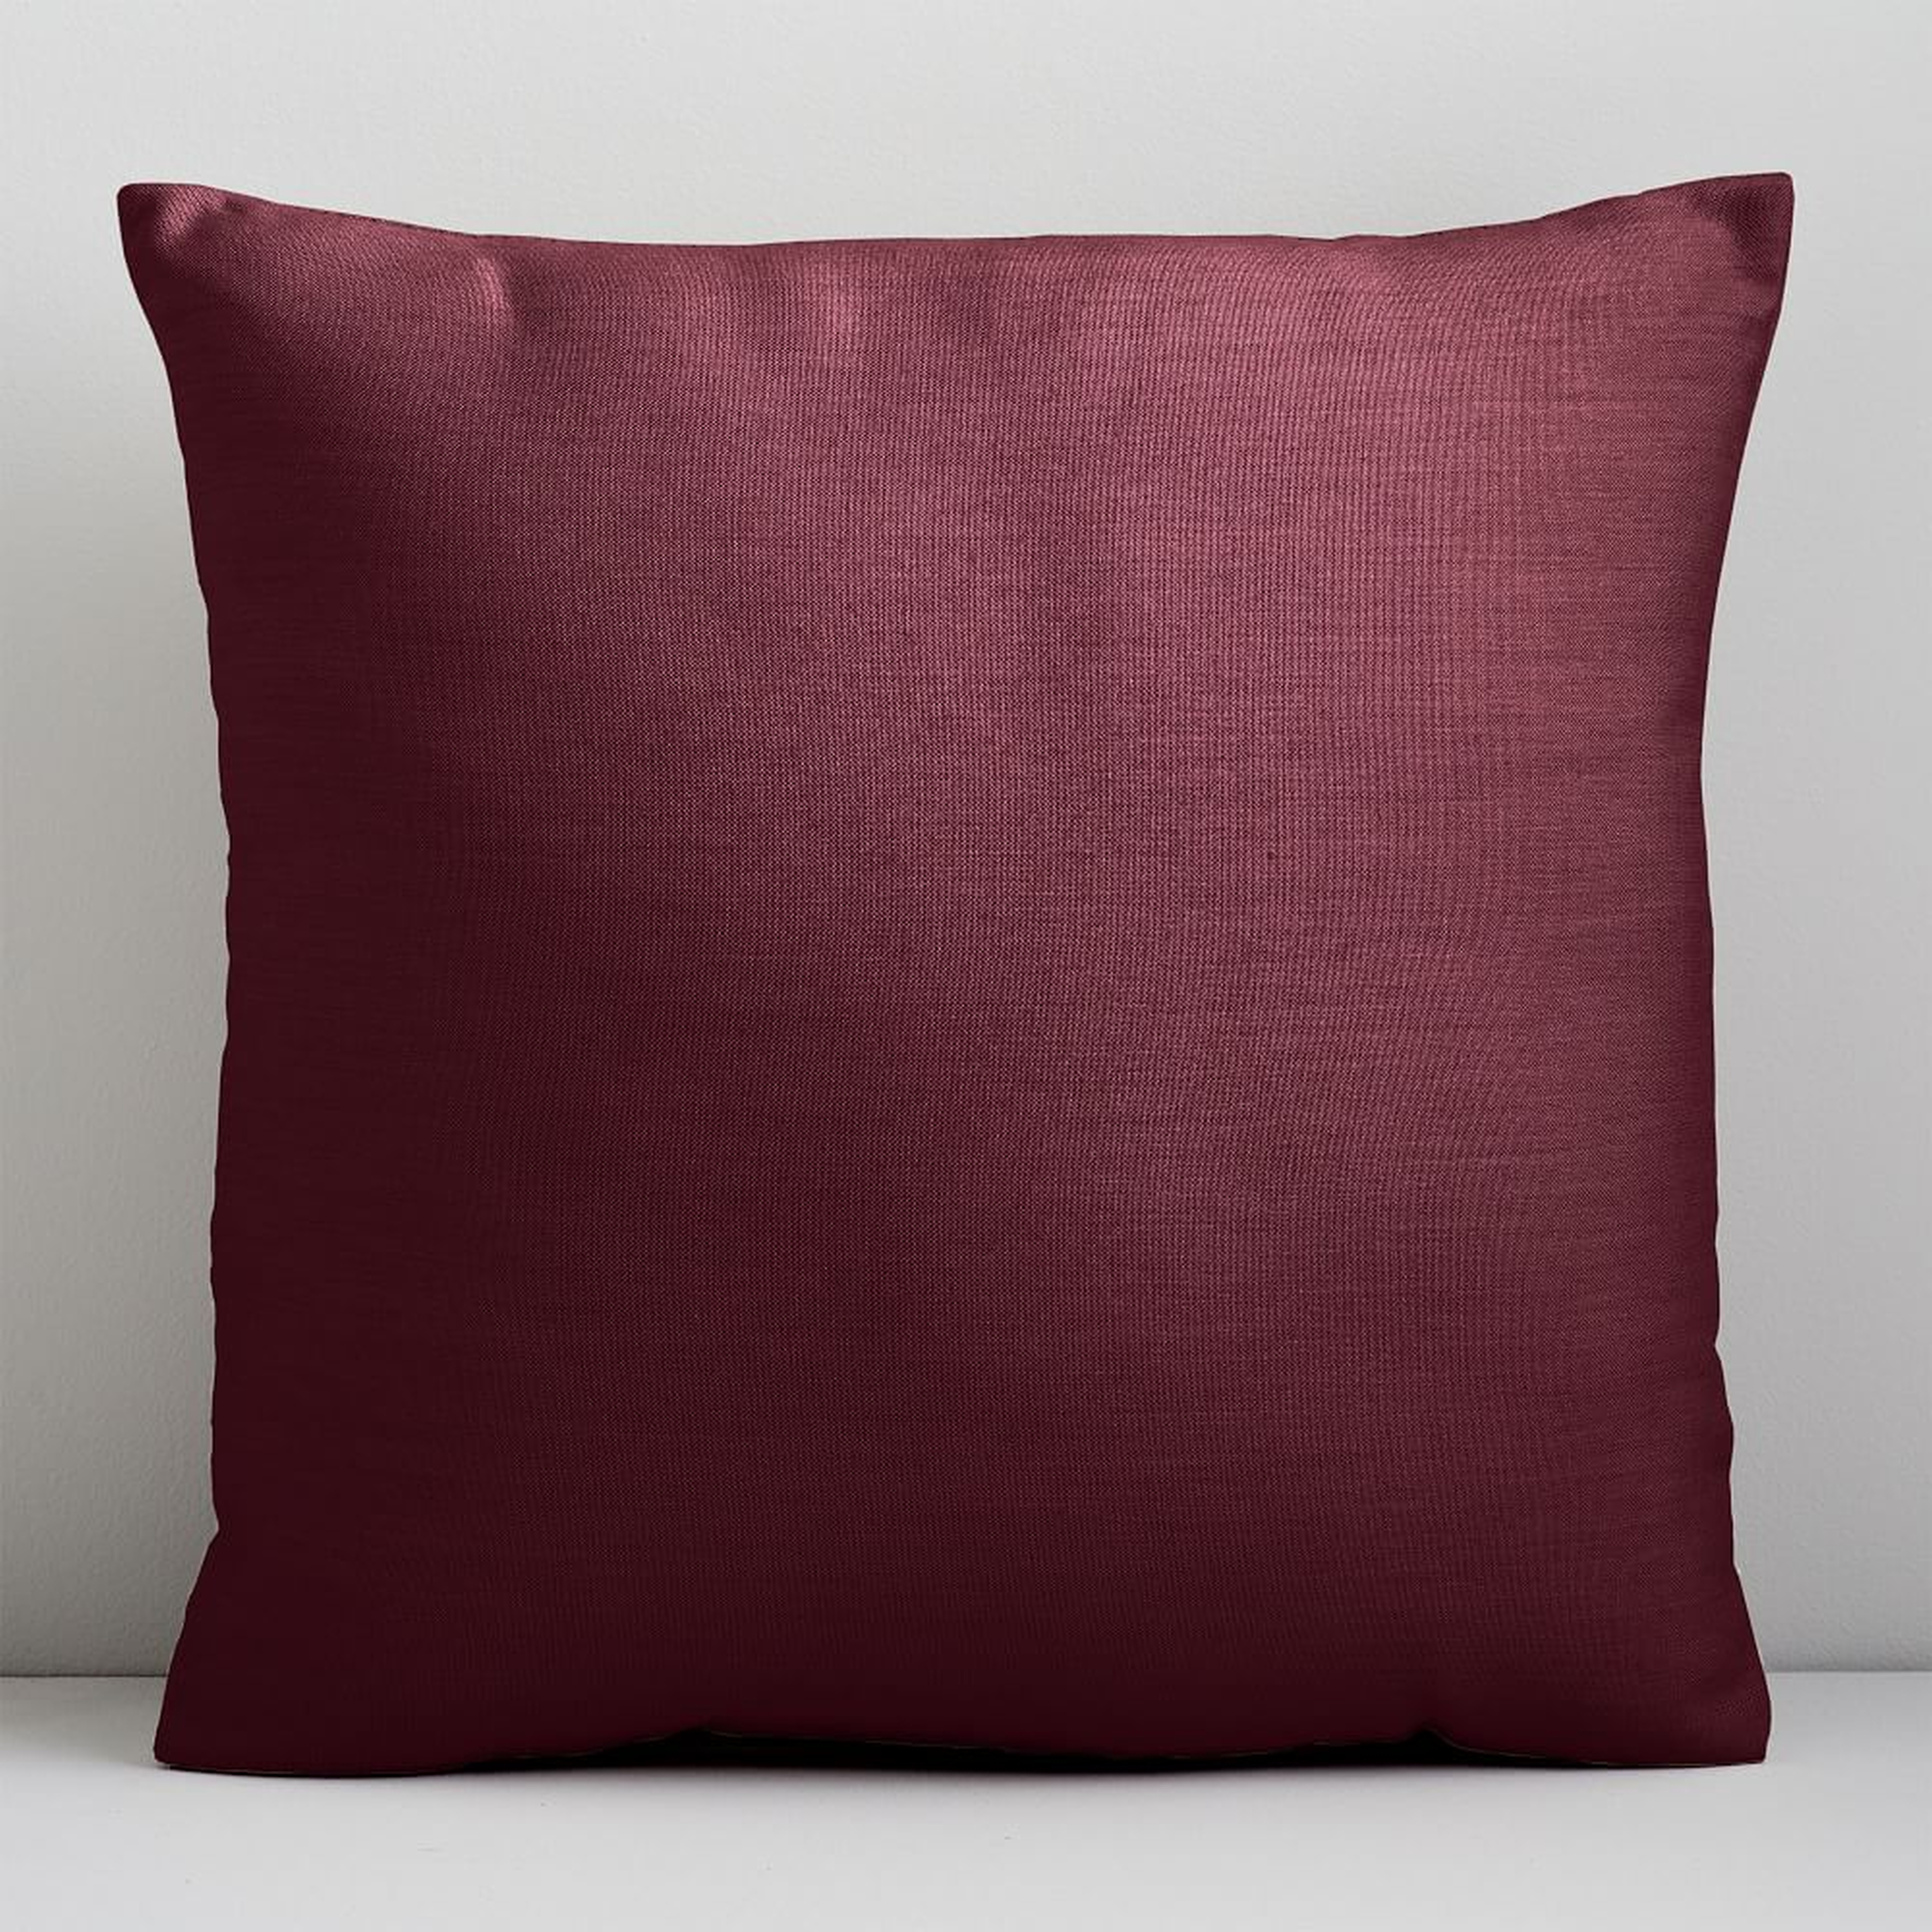 Sunbrella Indoor/Outdoor Cast Pillow, 20"x20", Currant - West Elm